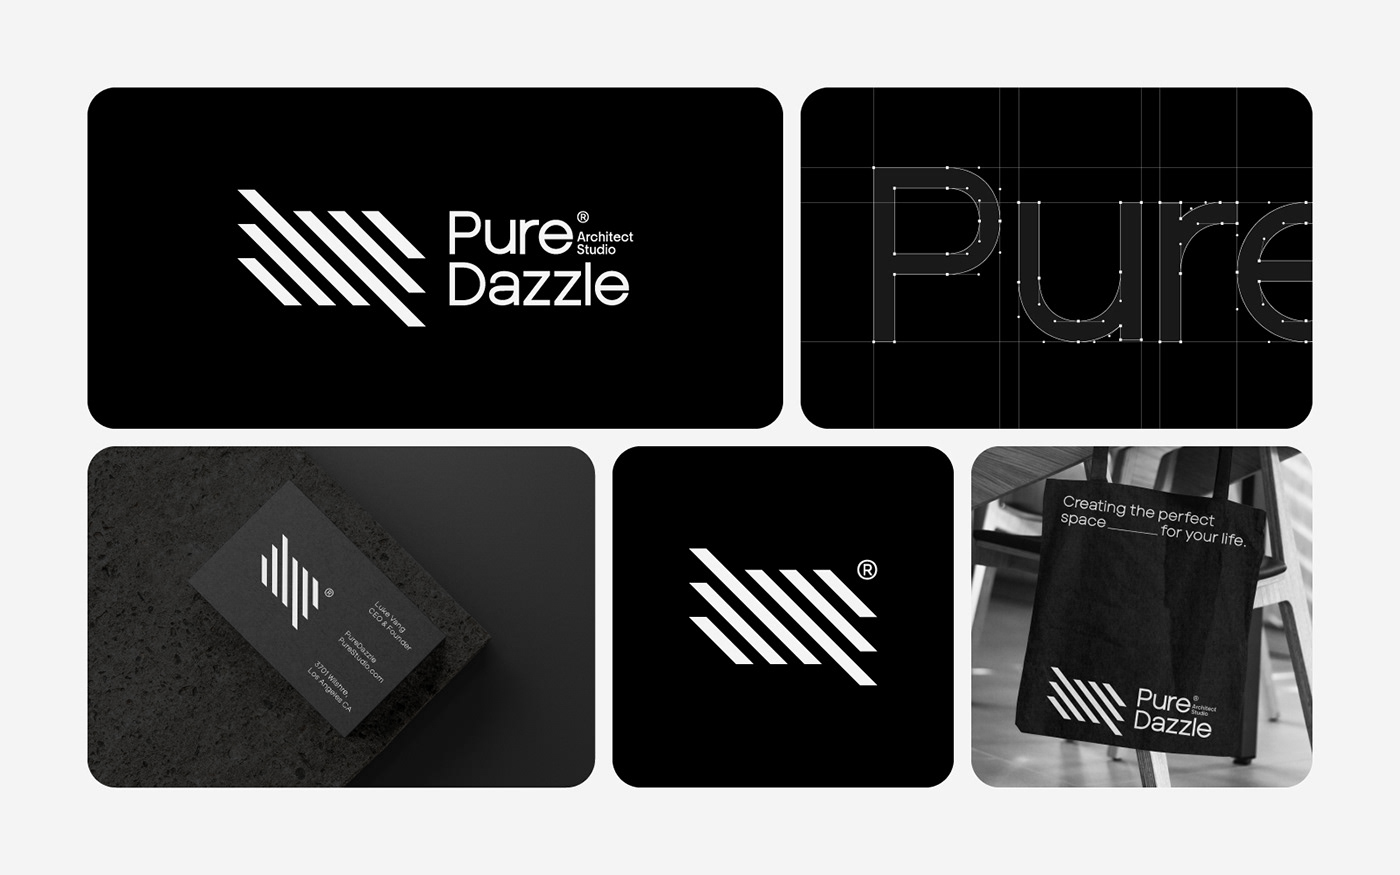 Pure Dazzle®  Architect studio | Architecture Branding